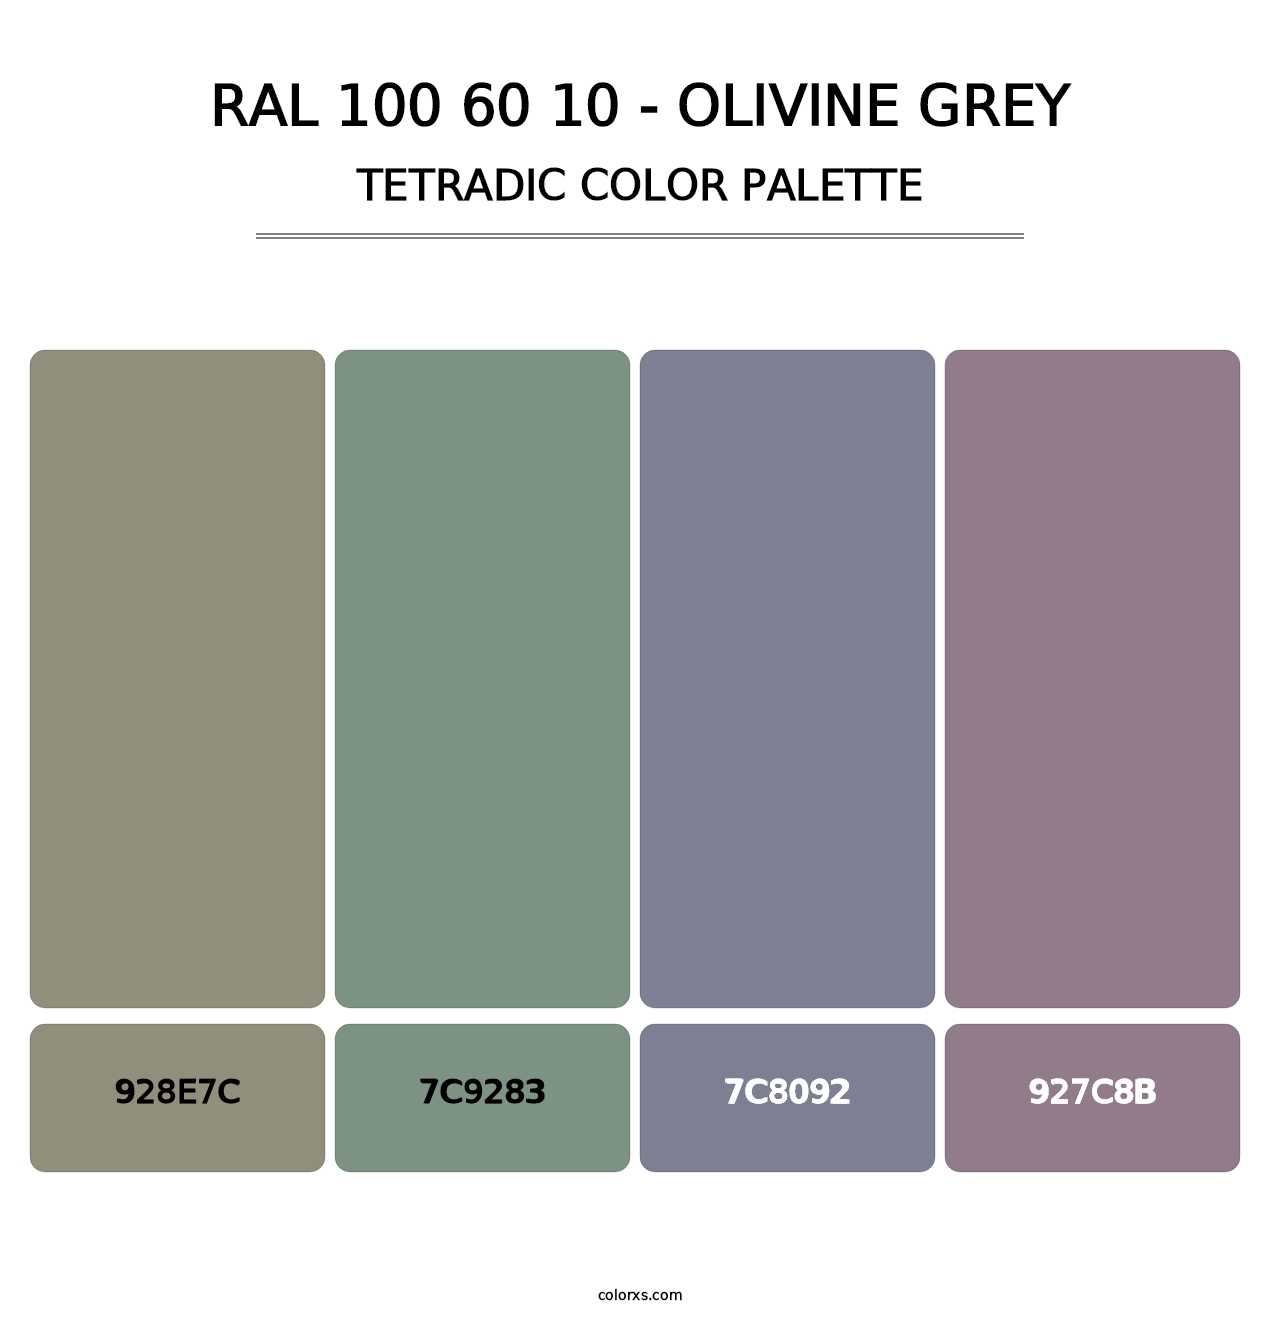 RAL 100 60 10 - Olivine Grey - Tetradic Color Palette